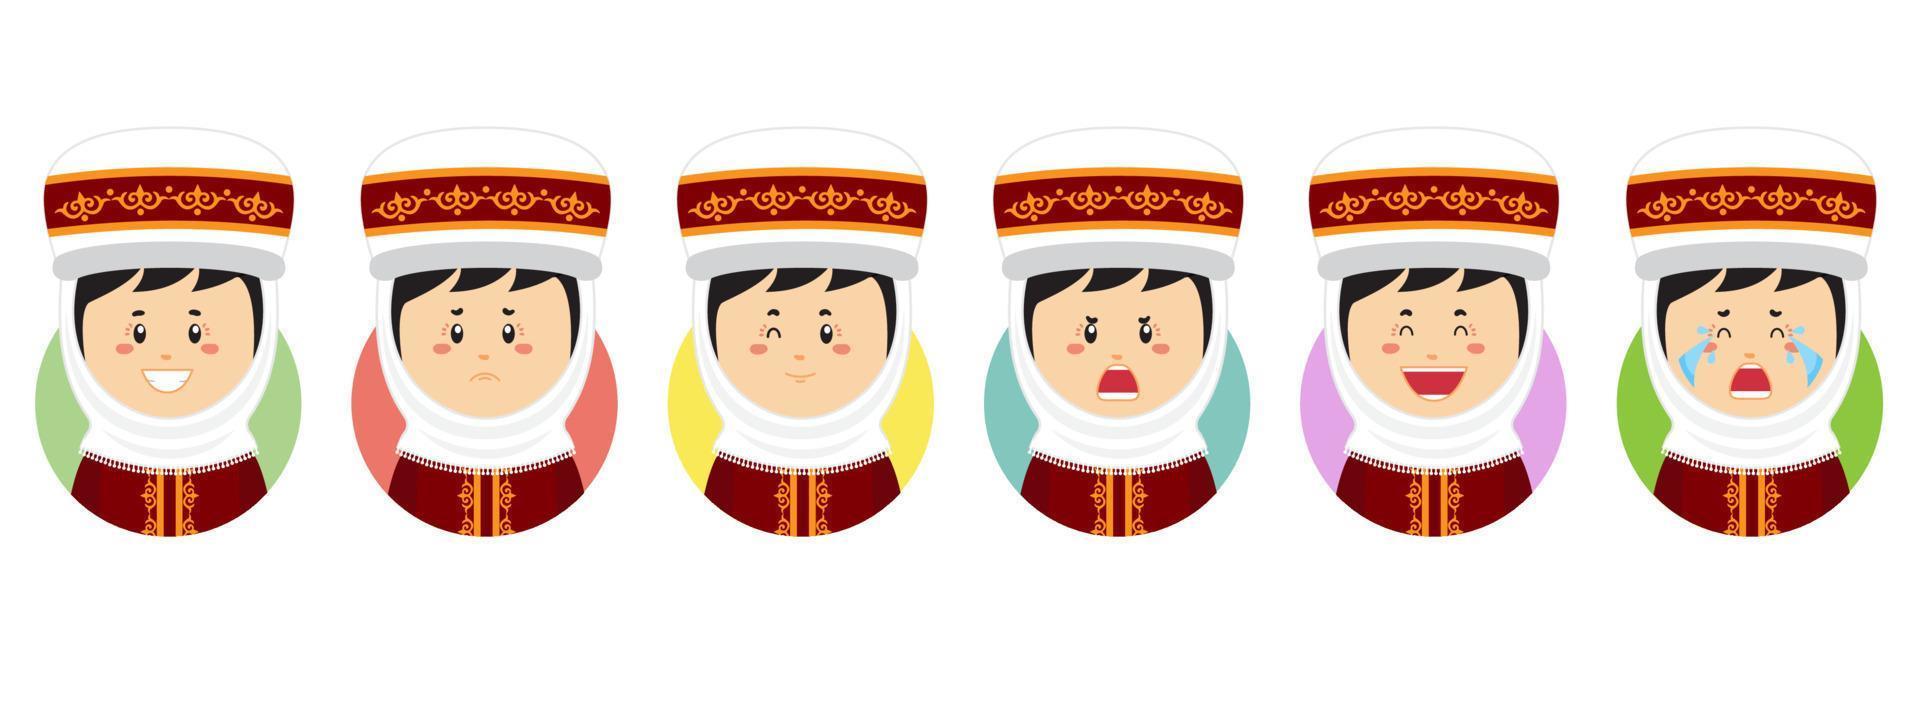 avatar du kirghizistan avec diverses expressions vecteur